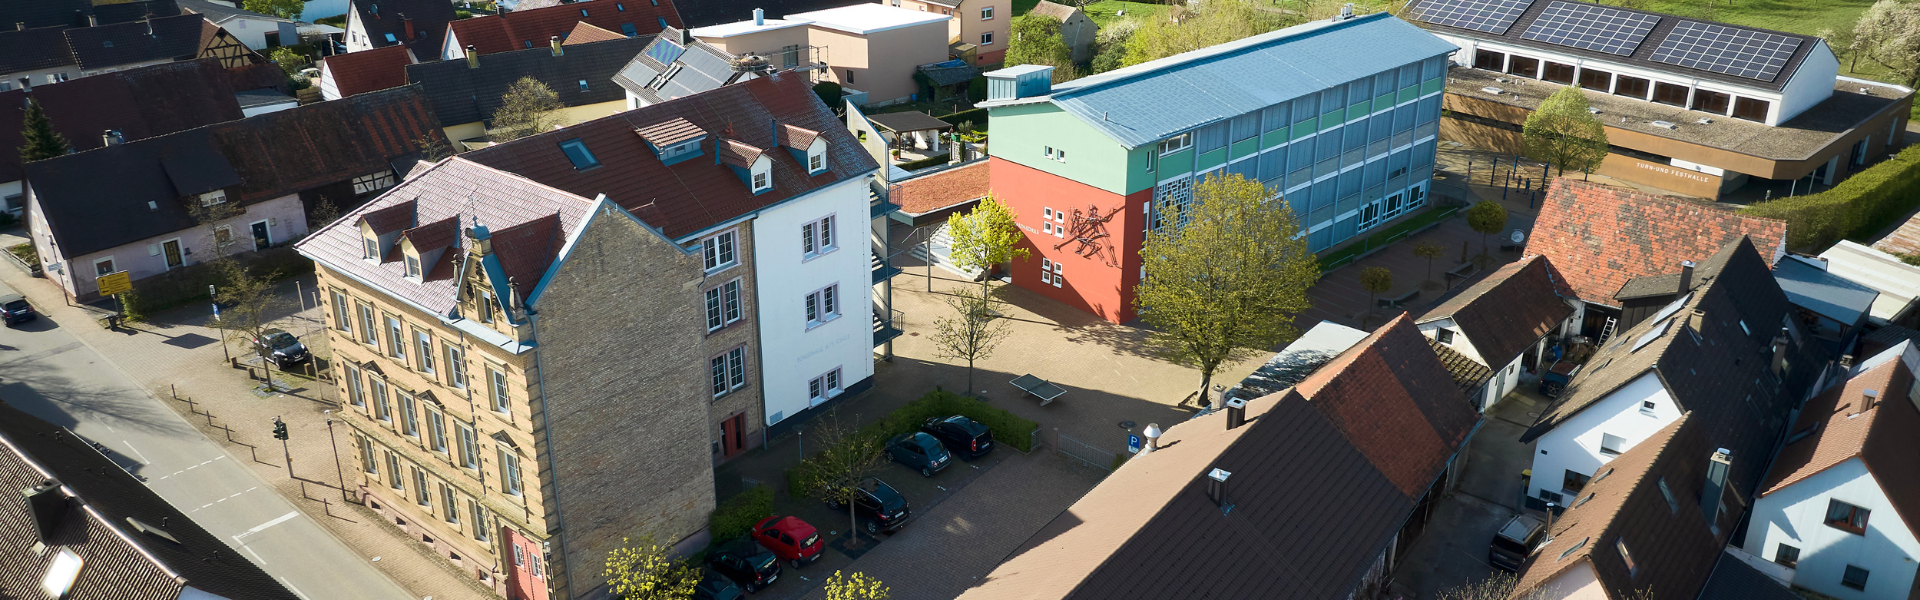 Luftaufnahme Ortsmitte mit Bürgerhaus Alte Schule, Karl-Julius-Späth-Grundschule und Turn- und Festhalle